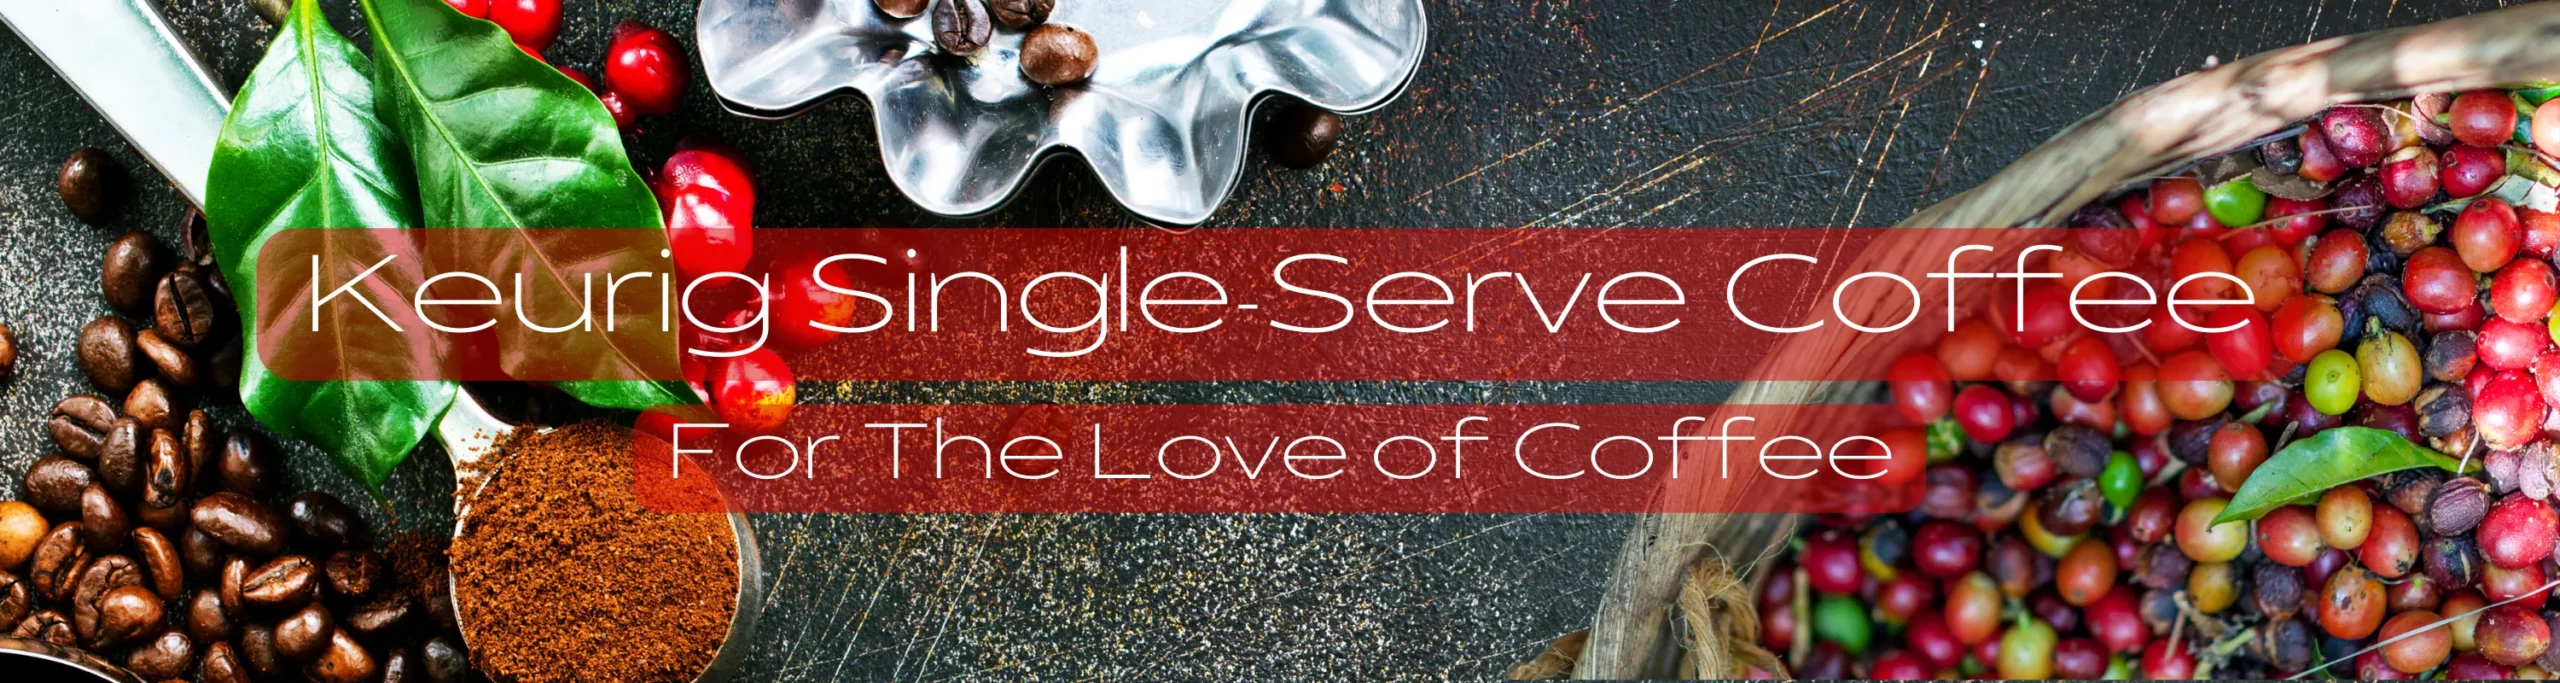 Keurig-Single-Serve-Coffee-Banner